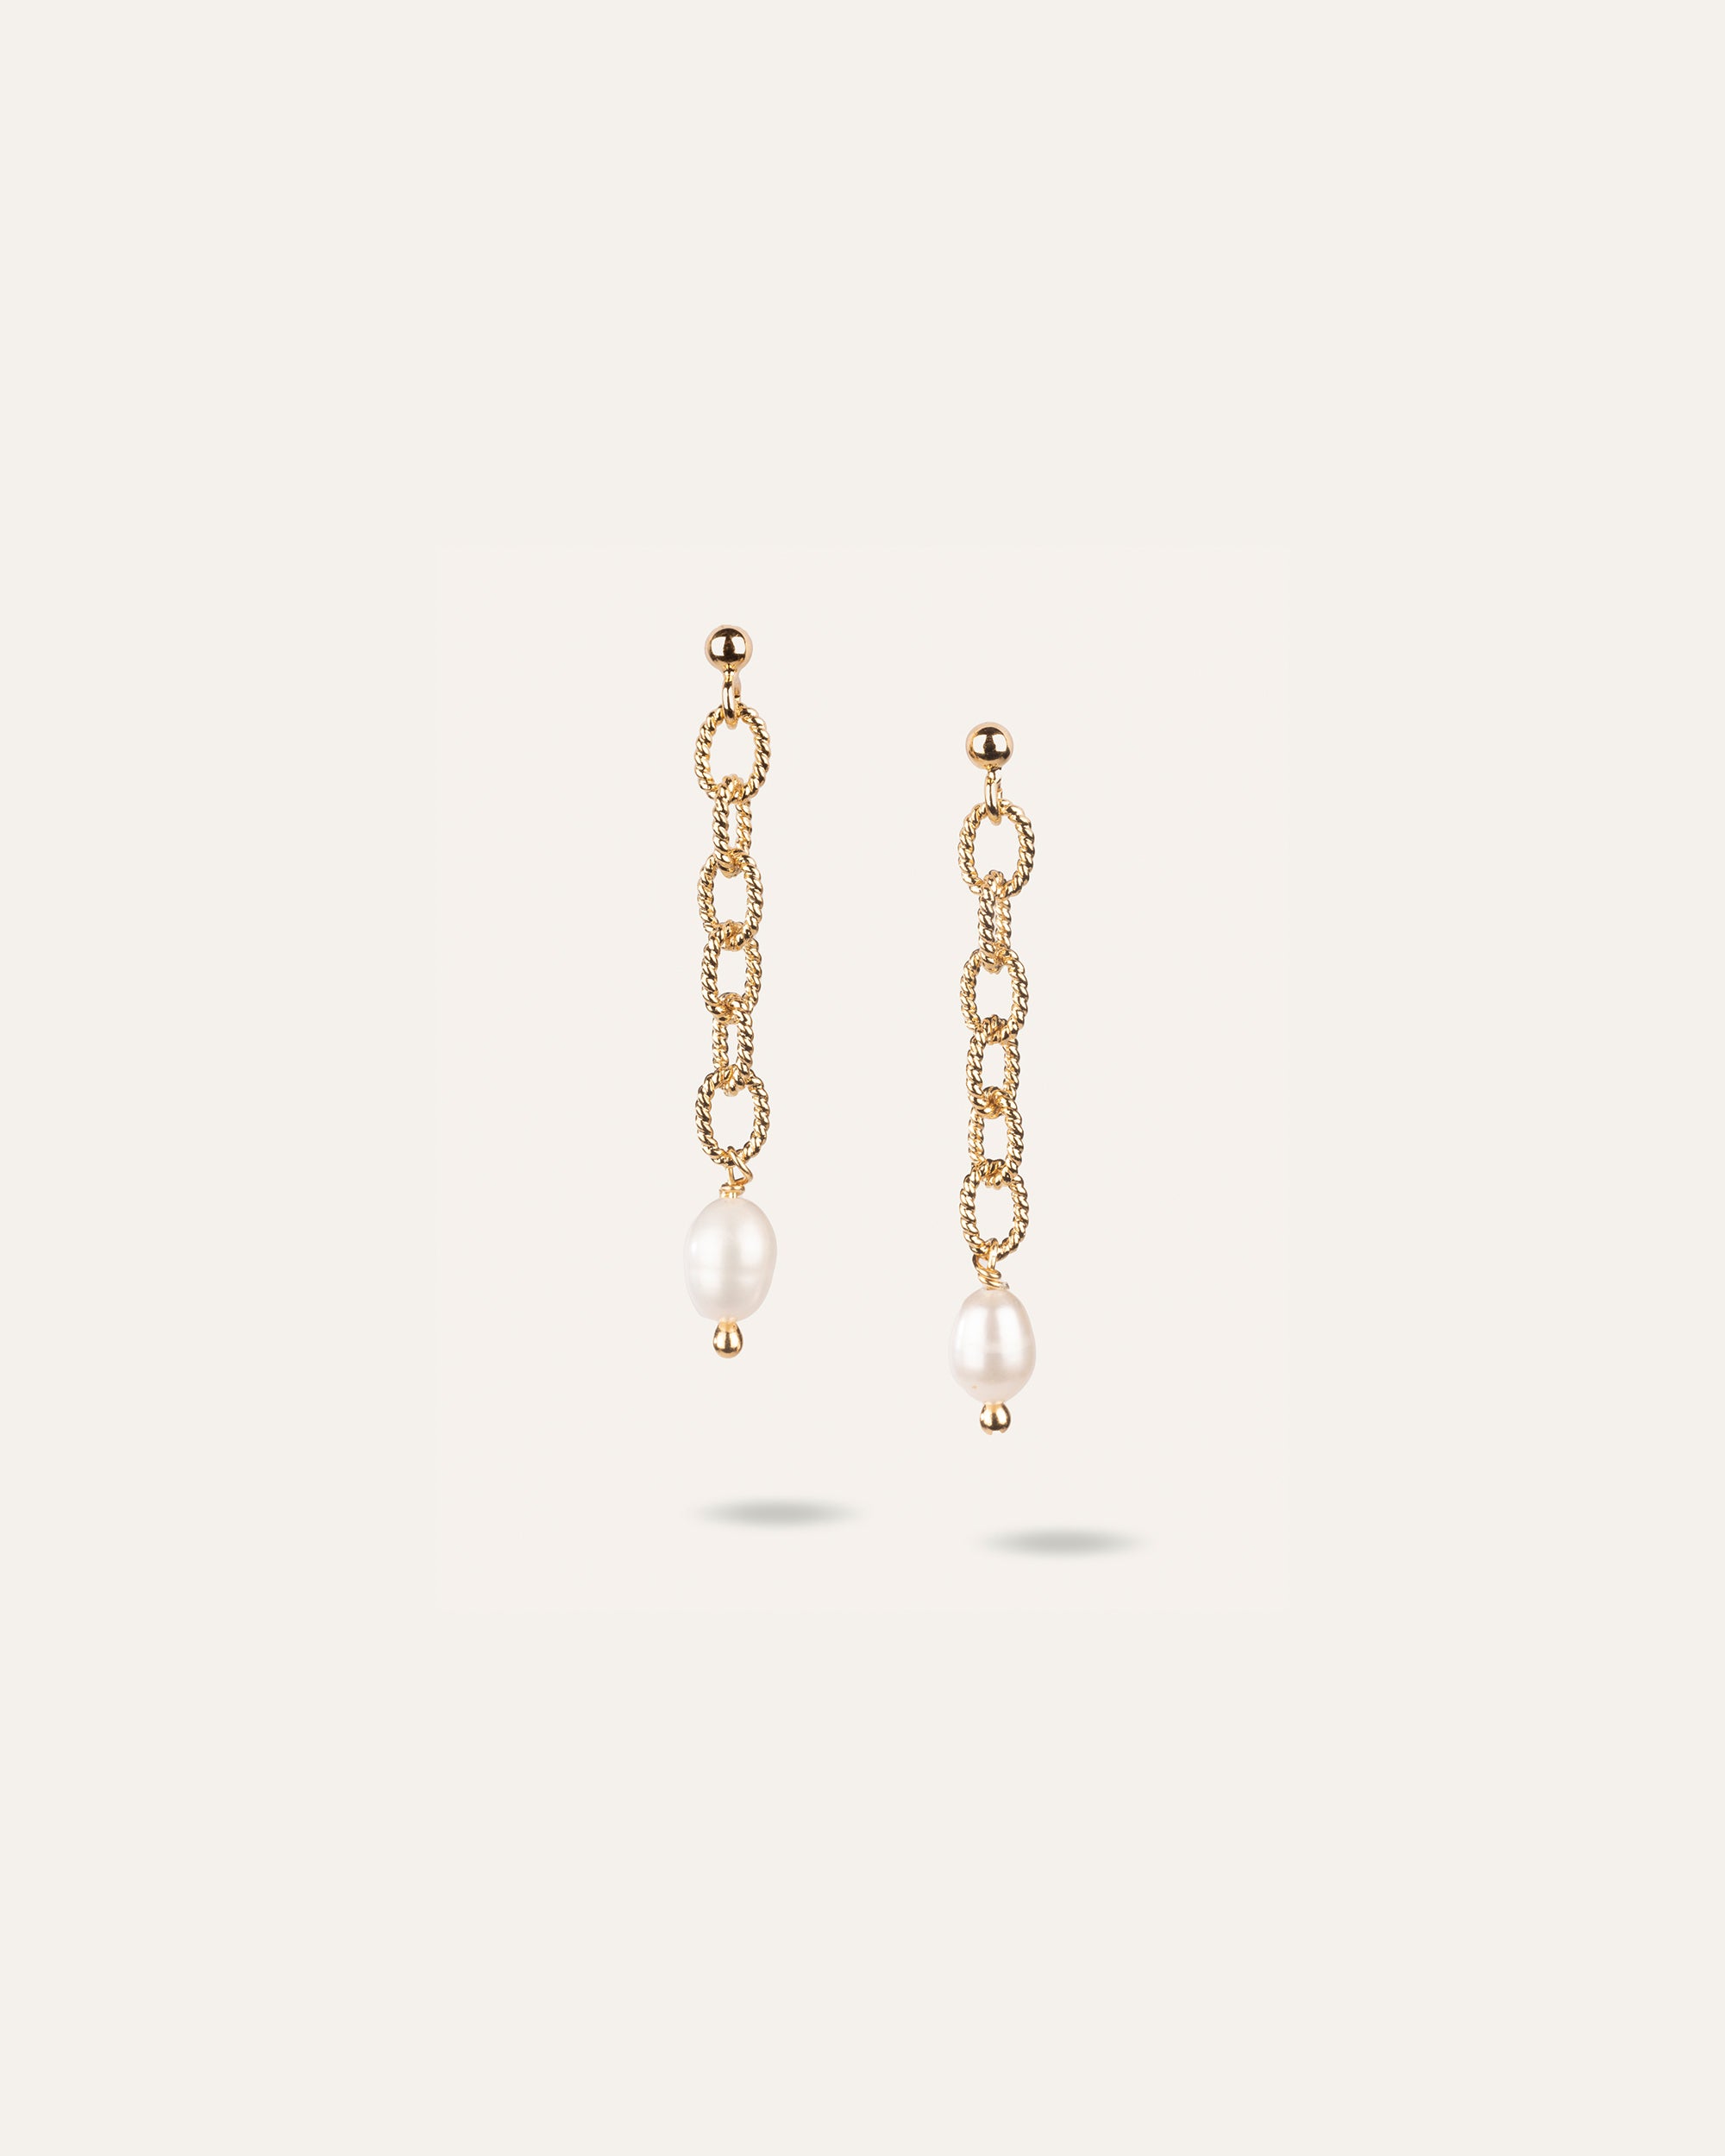 Boucles d'oreilles made in France pendantes en chaîne ovale facetté en plaqué or 3 microns, associées à une perle de culture allongée.